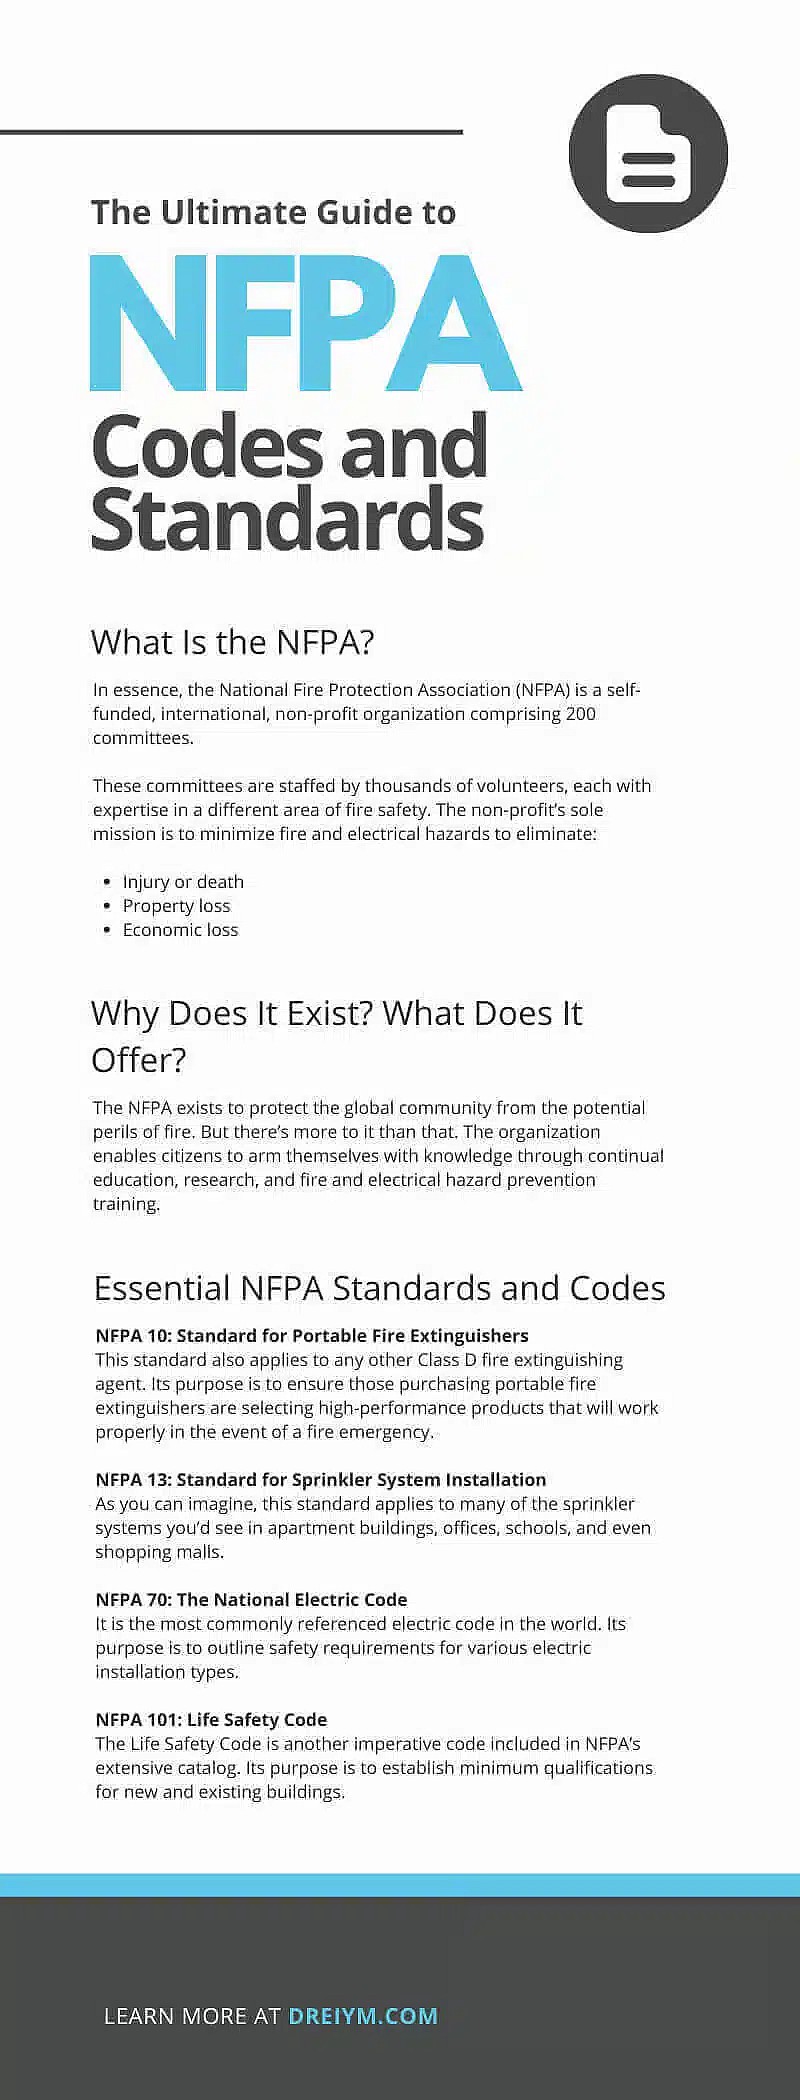 De ultieme gids voor NFPA-codes en -normen